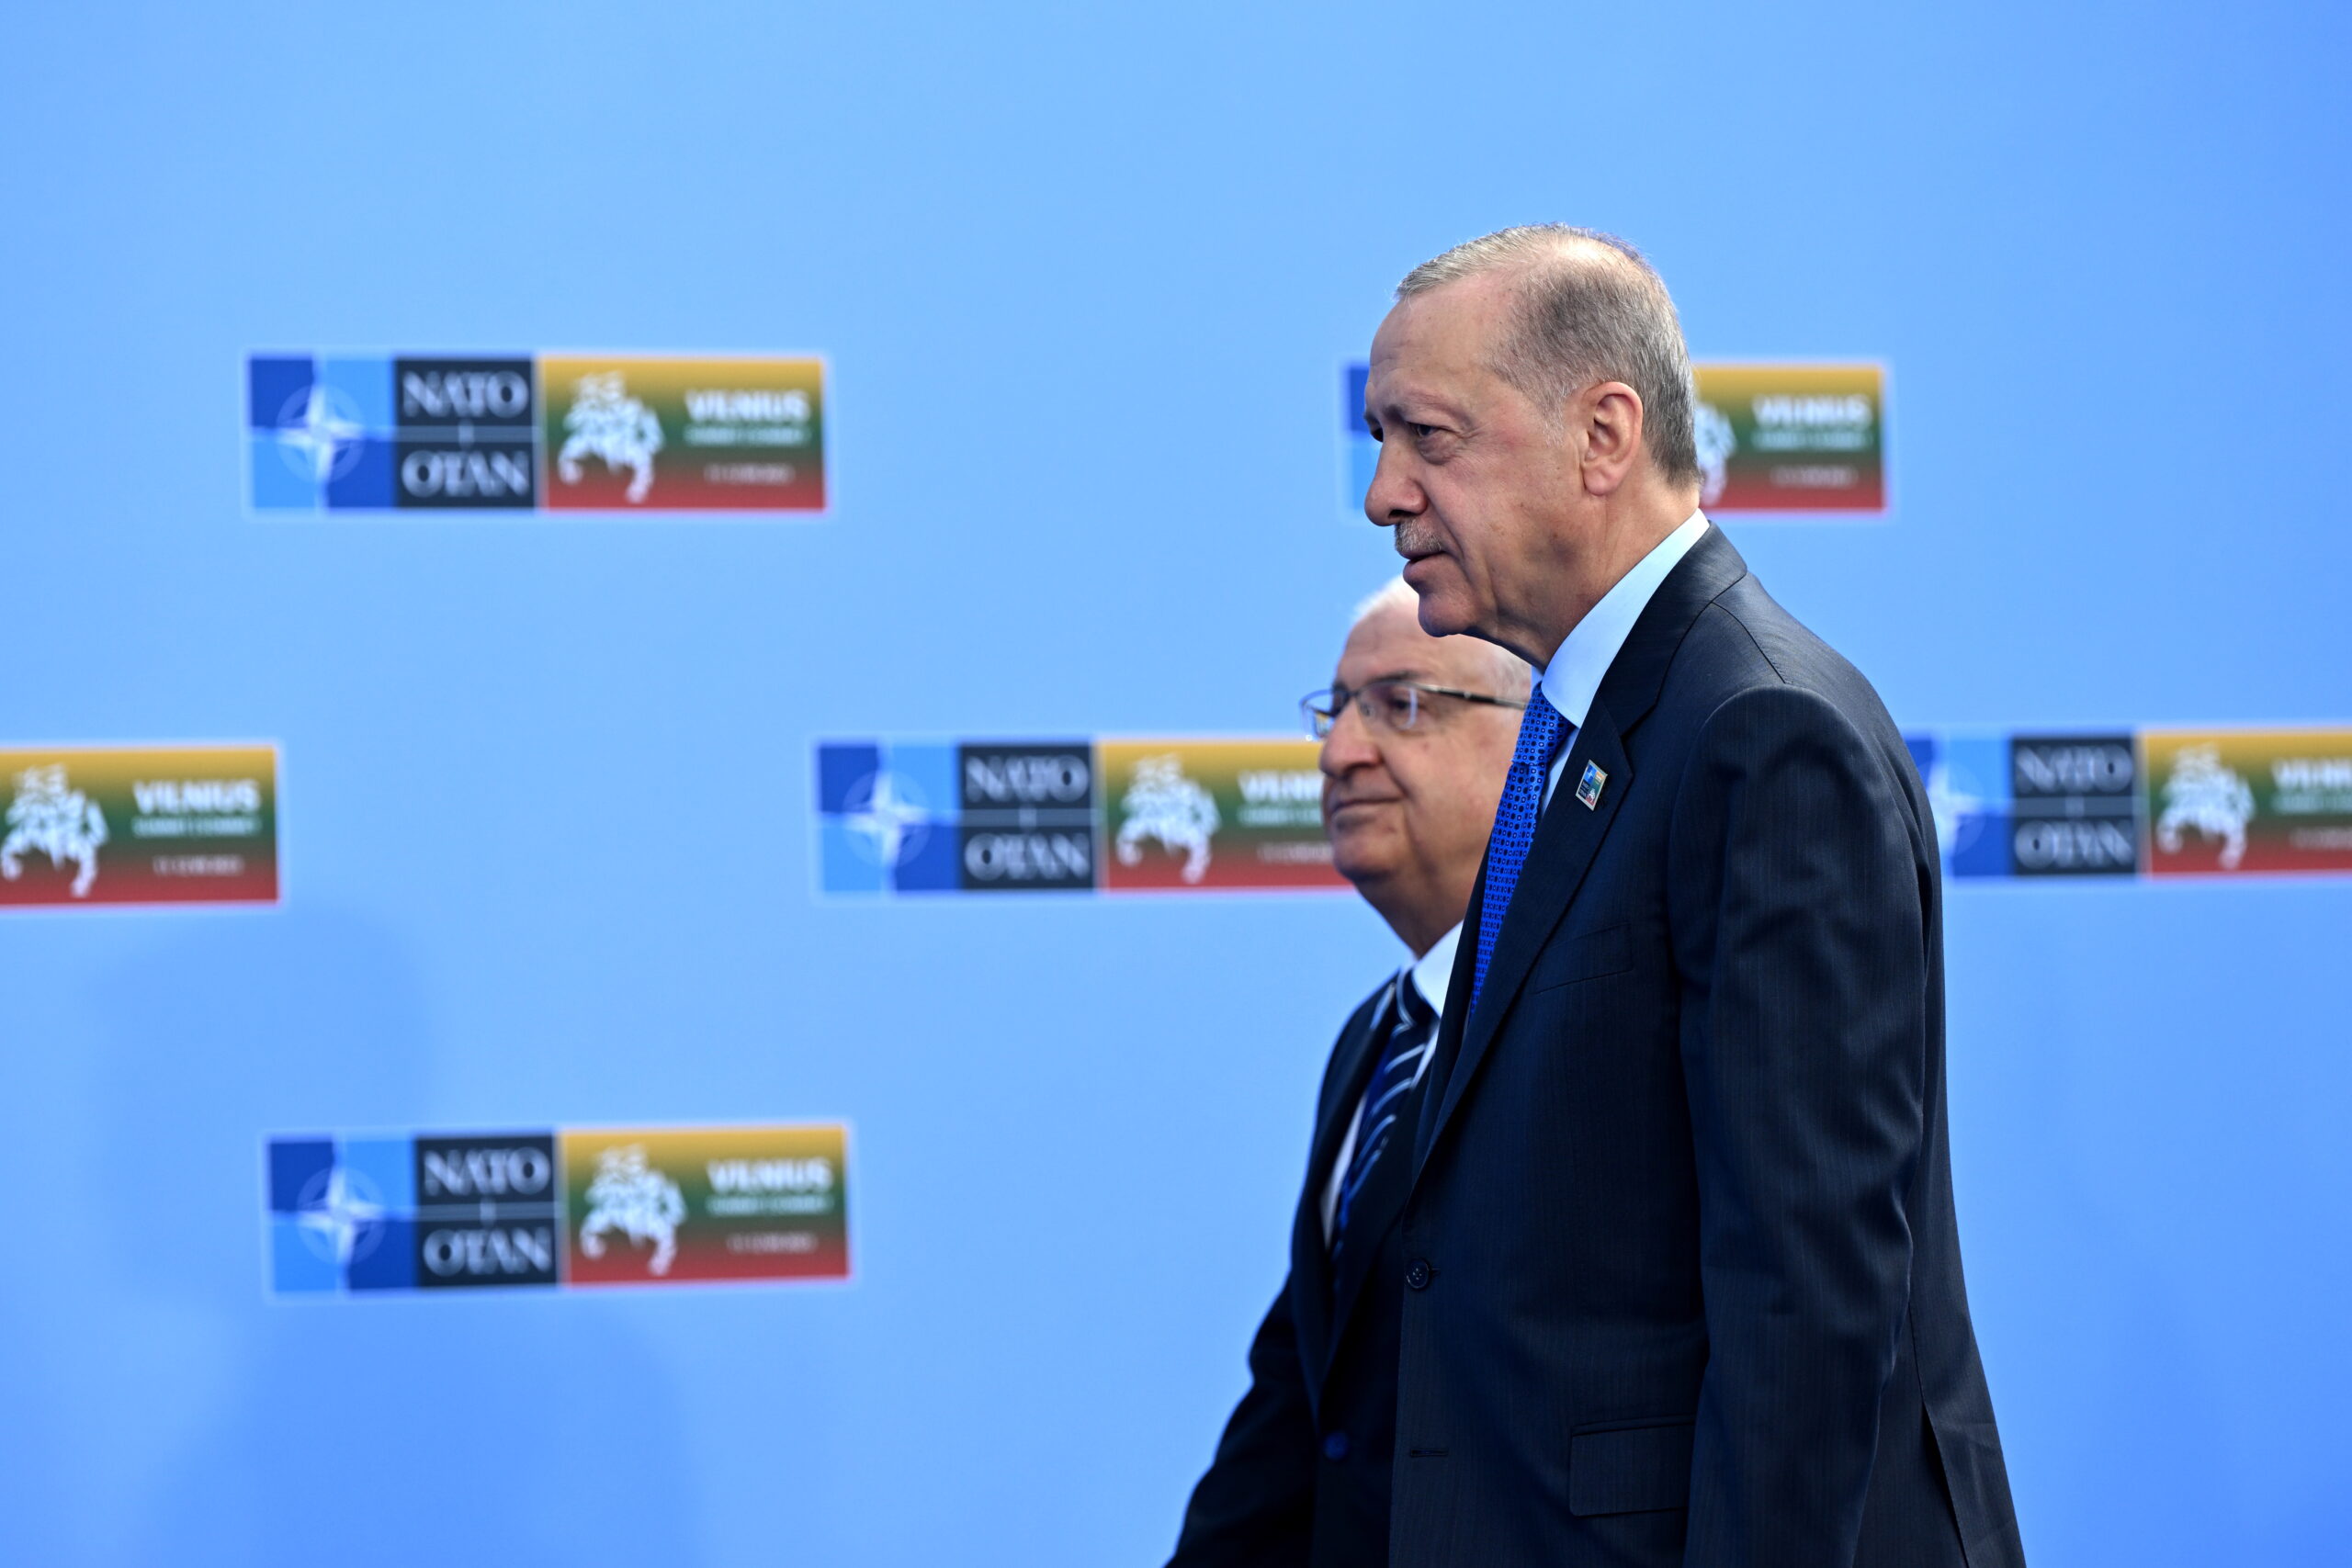 Σύνοδος Κορυφής του ΝΑΤΟ: To χρυσοφόρο «Ναι» της Άγκυρας και το ανοικτό παράθυρο